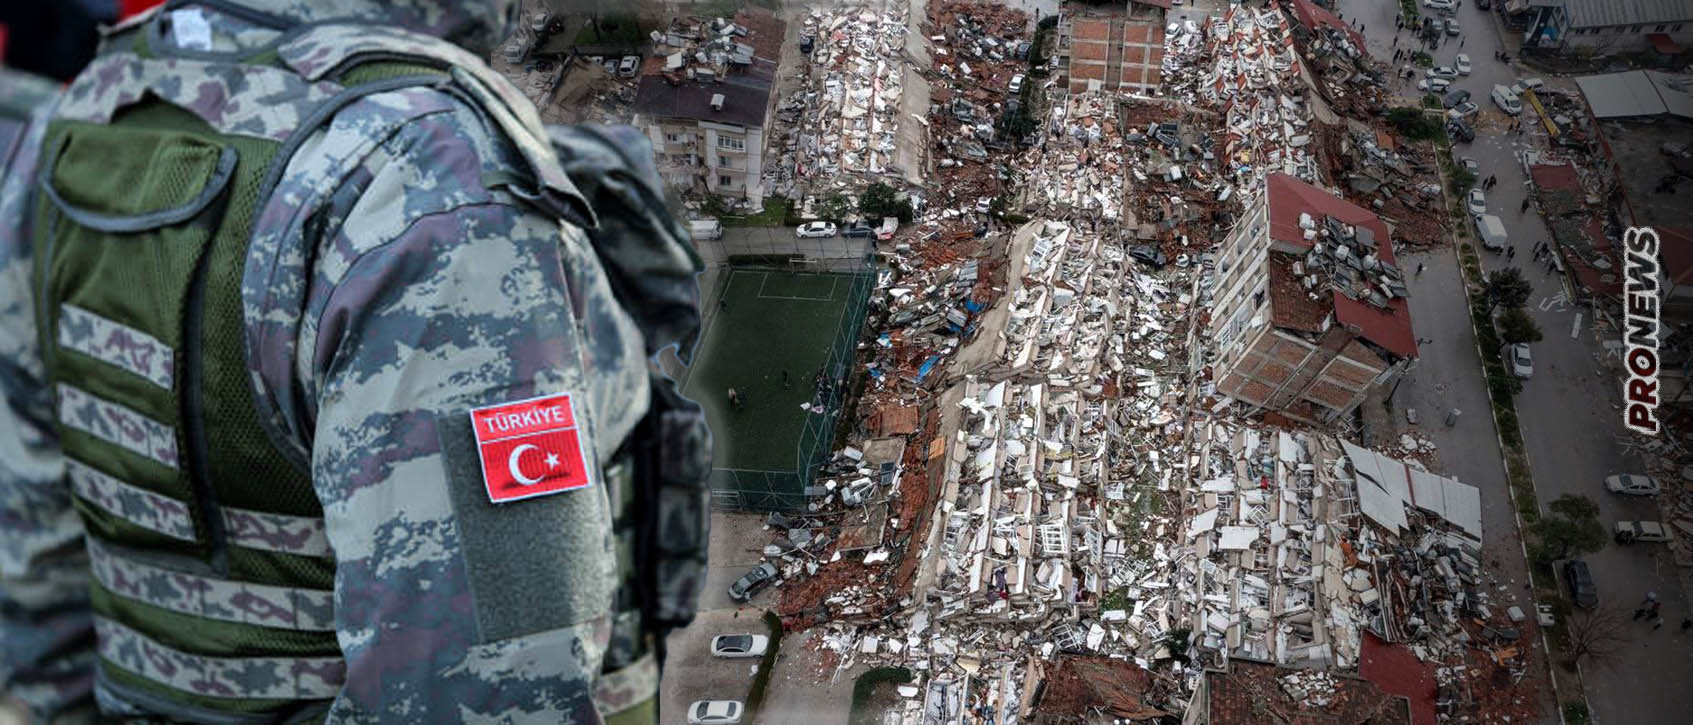 Σεισμοί Τουρκία: Εντολή για μετάβαση ολόκληρης της 2ης Στρατιάς στις σεισμόπληκτες περιοχές – Περιορισμοί στο Twitter και «συγγνώμες»